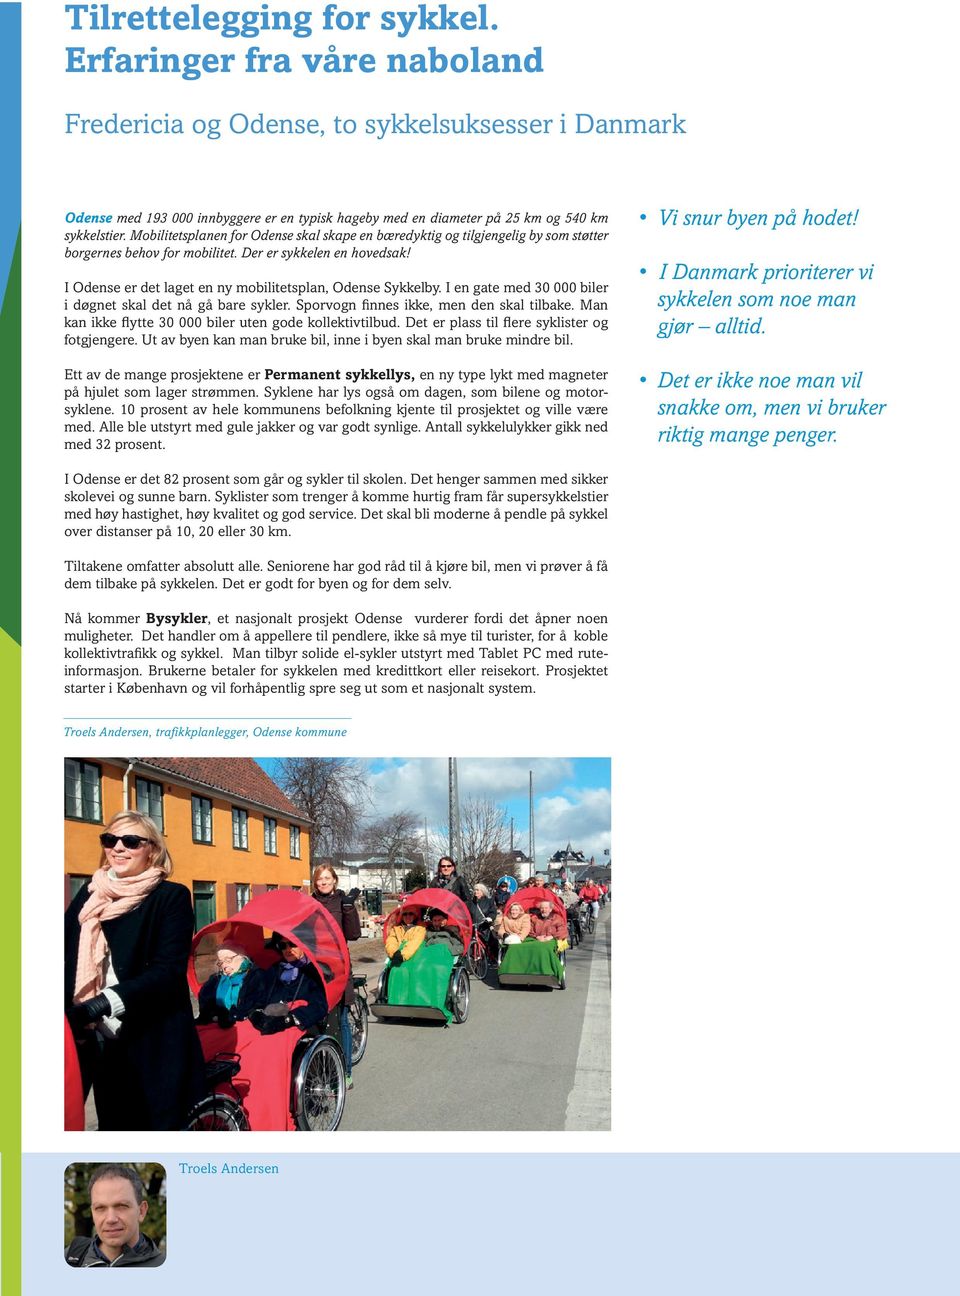 Mobilitetsplanen for Odense skal skape en bæredyktig og tilgjengelig by som støtter borgernes behov for mobilitet. Der er sykkelen en hovedsak!